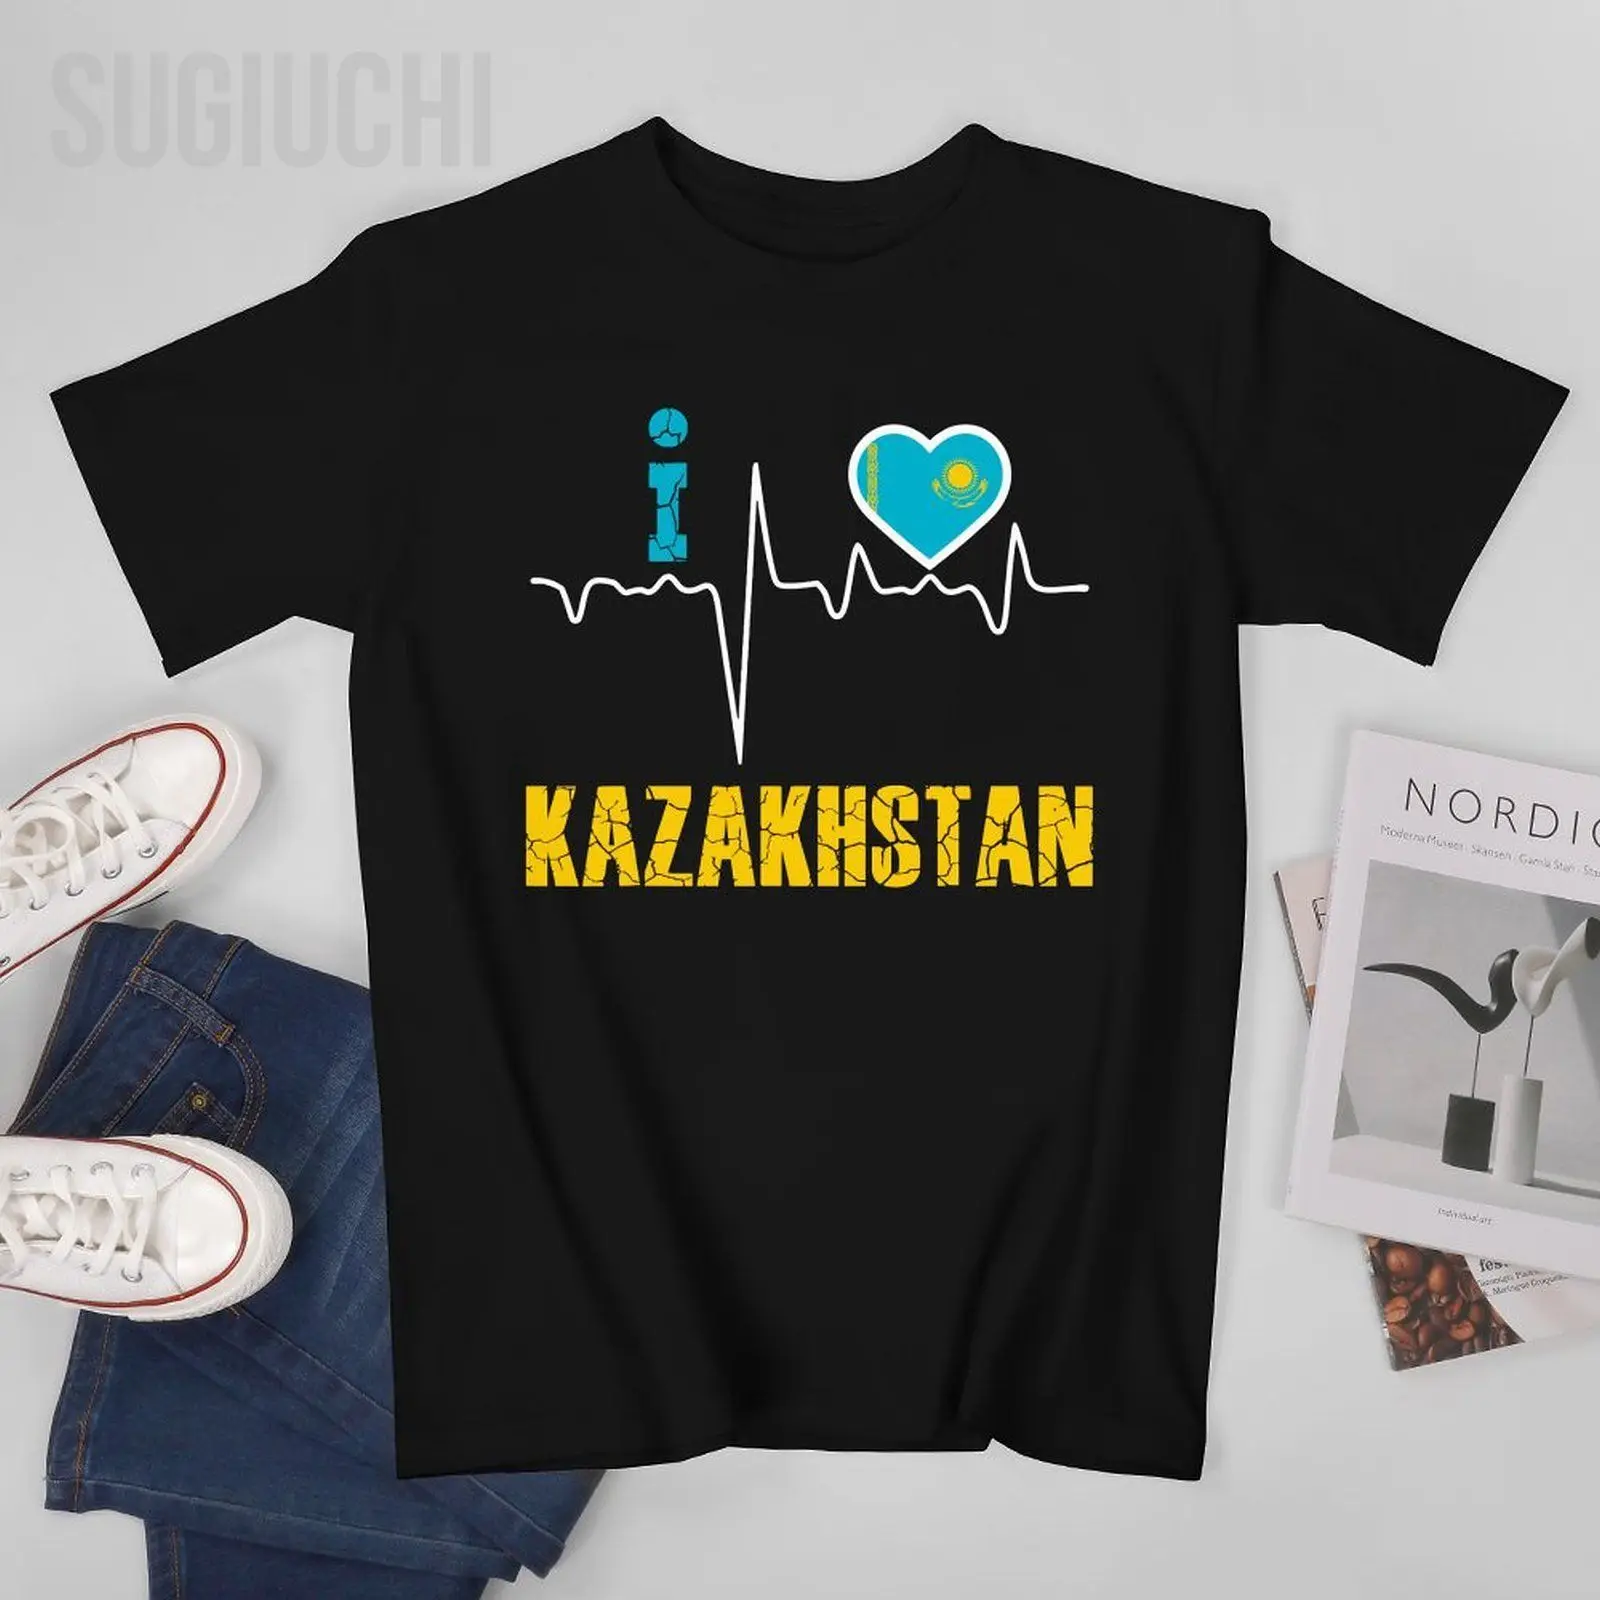 Унисекс, мужчины, я люблю КАЗАХСТАН, футболка с электрокардиограммой, футболки, женские футболки, футболки из 100% хлопка для мальчиков